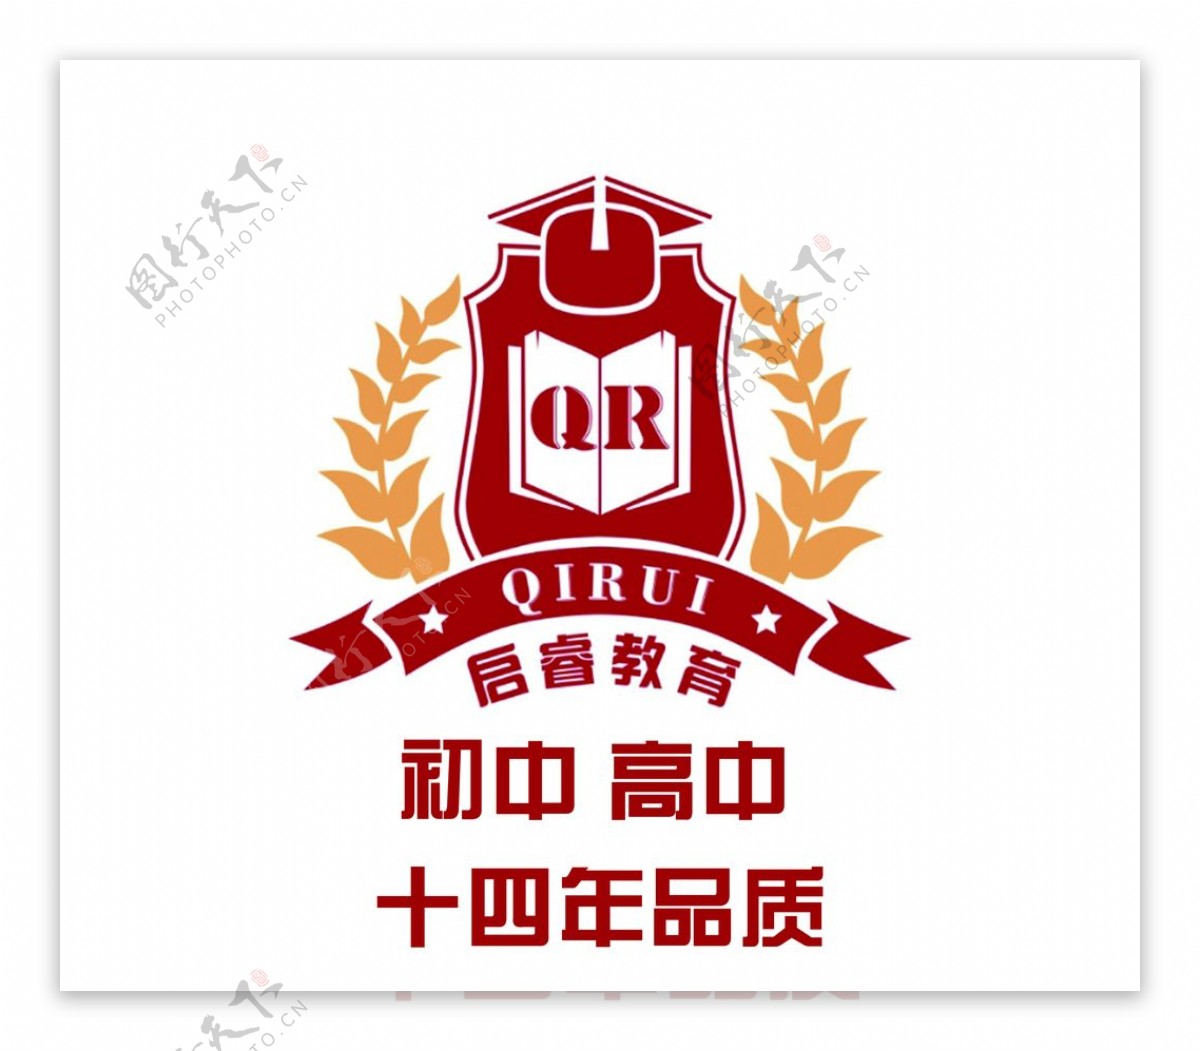 启睿教育logo图片